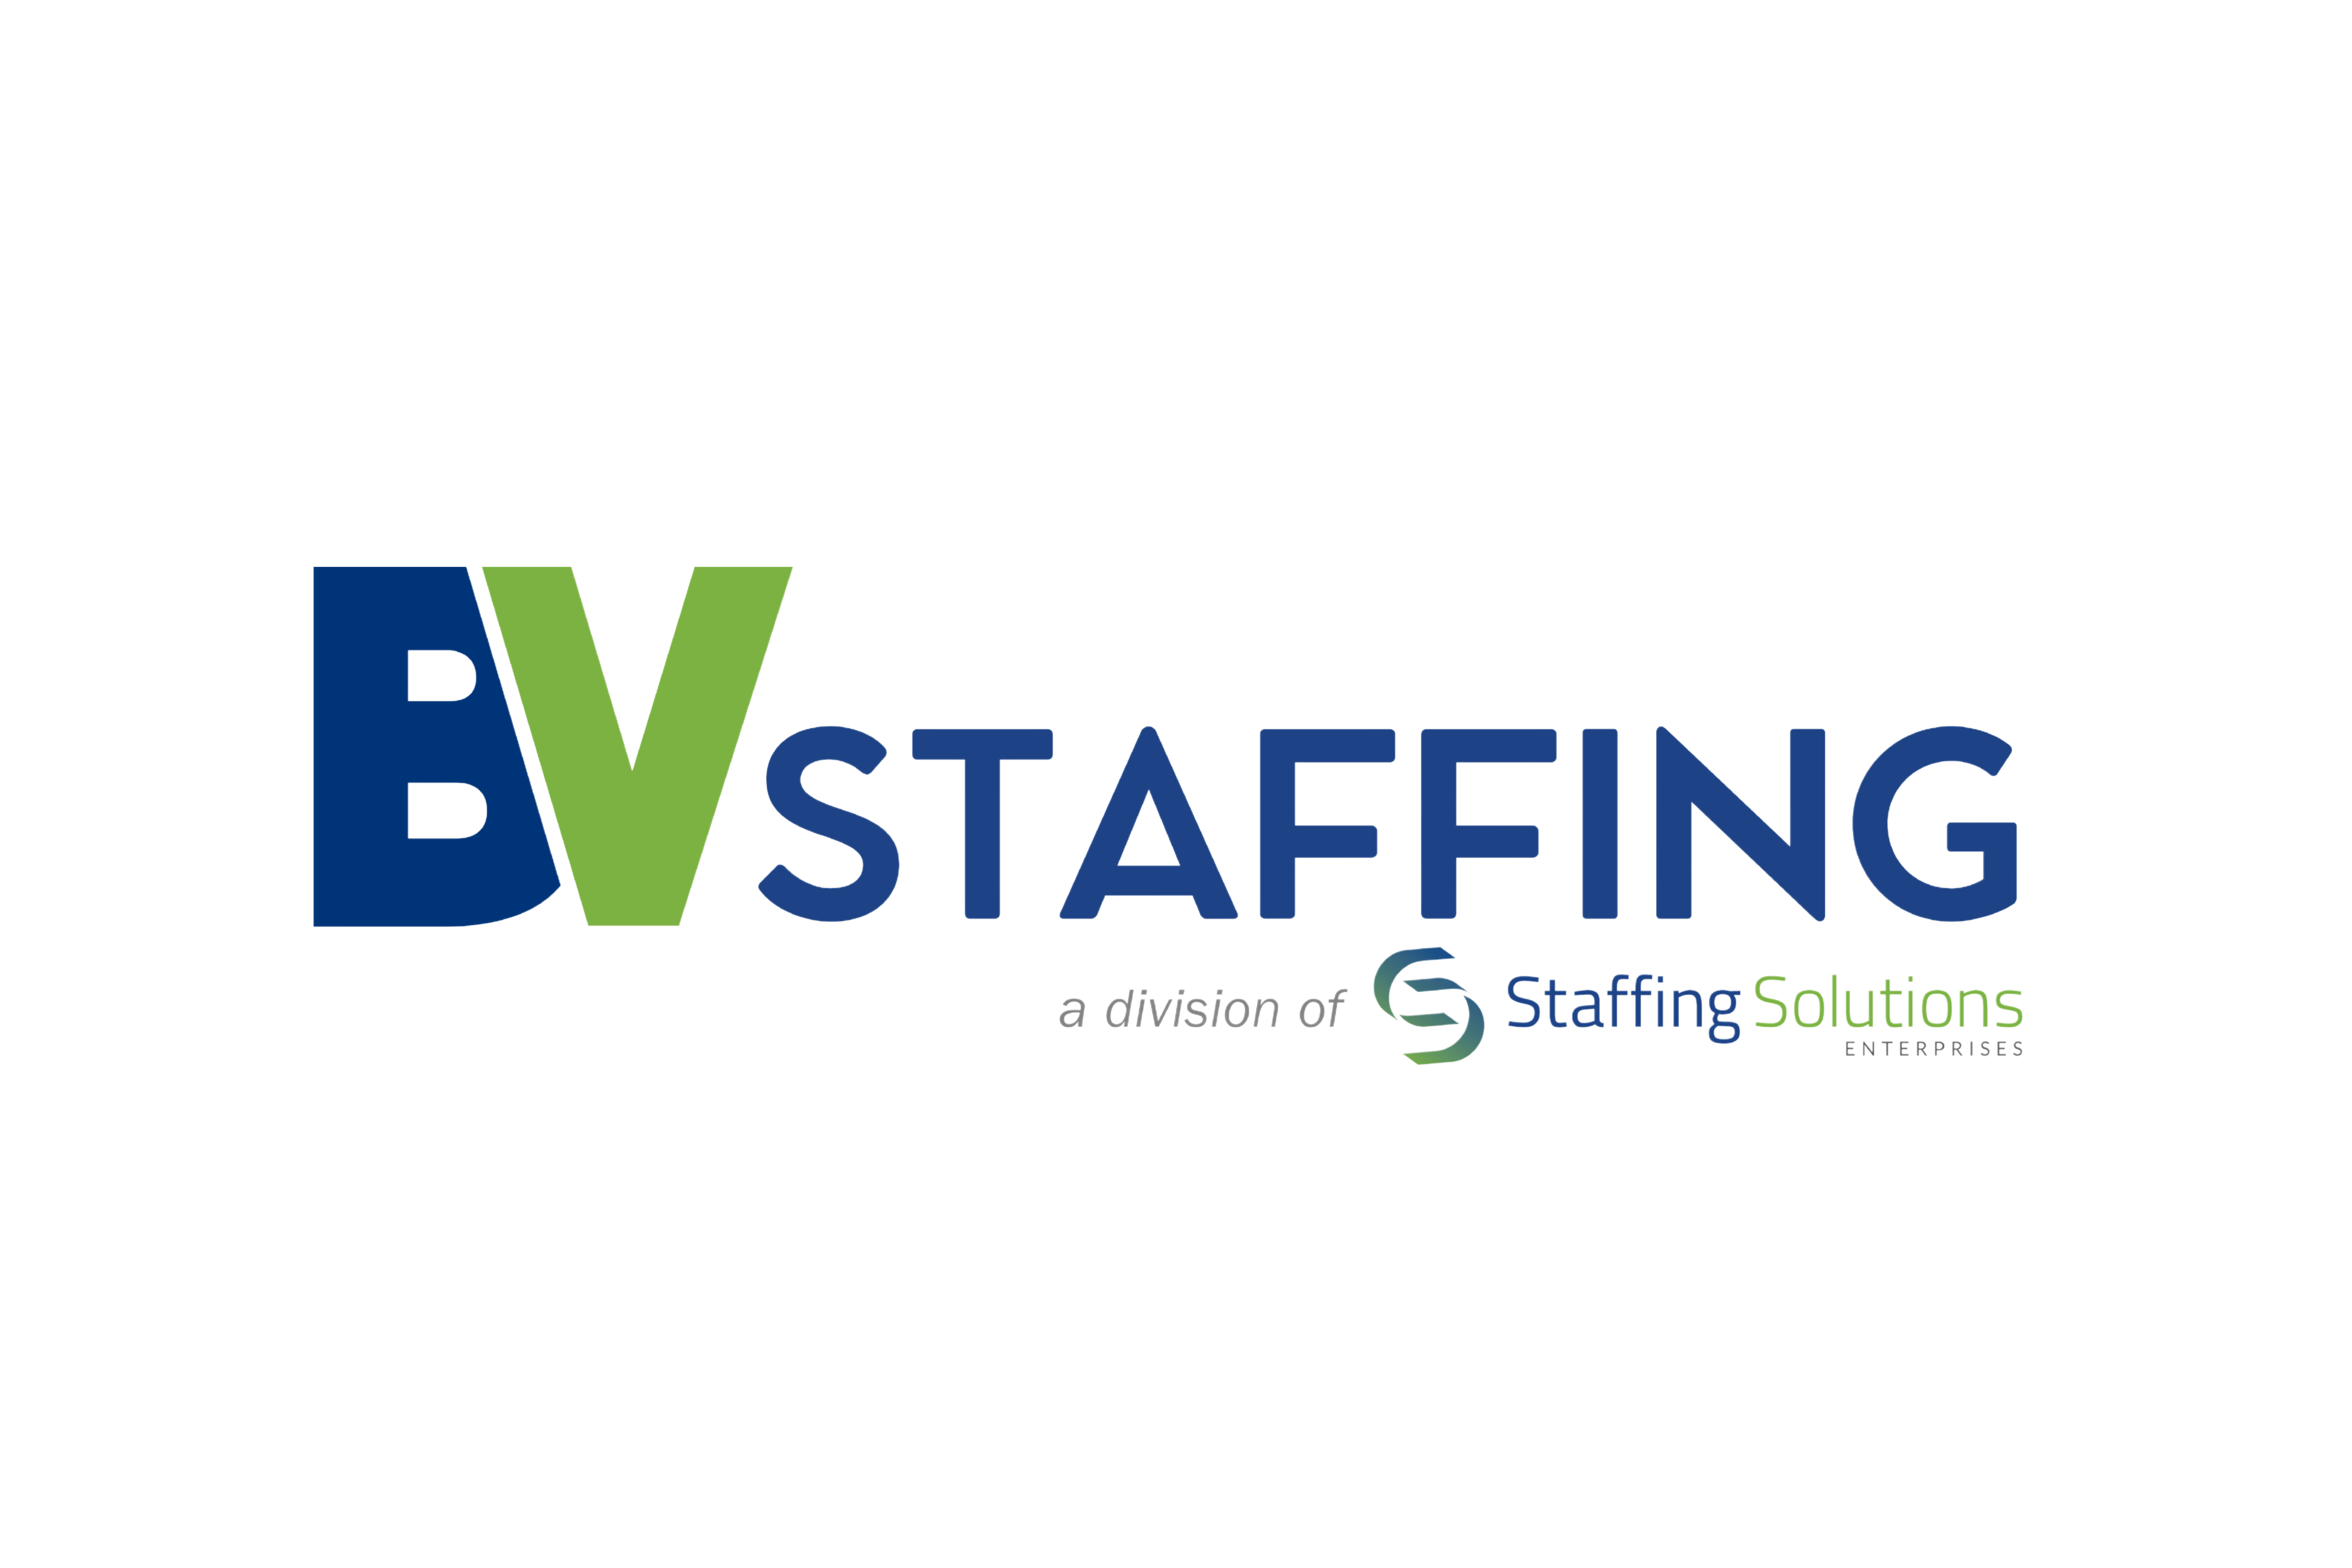 BV Staffing